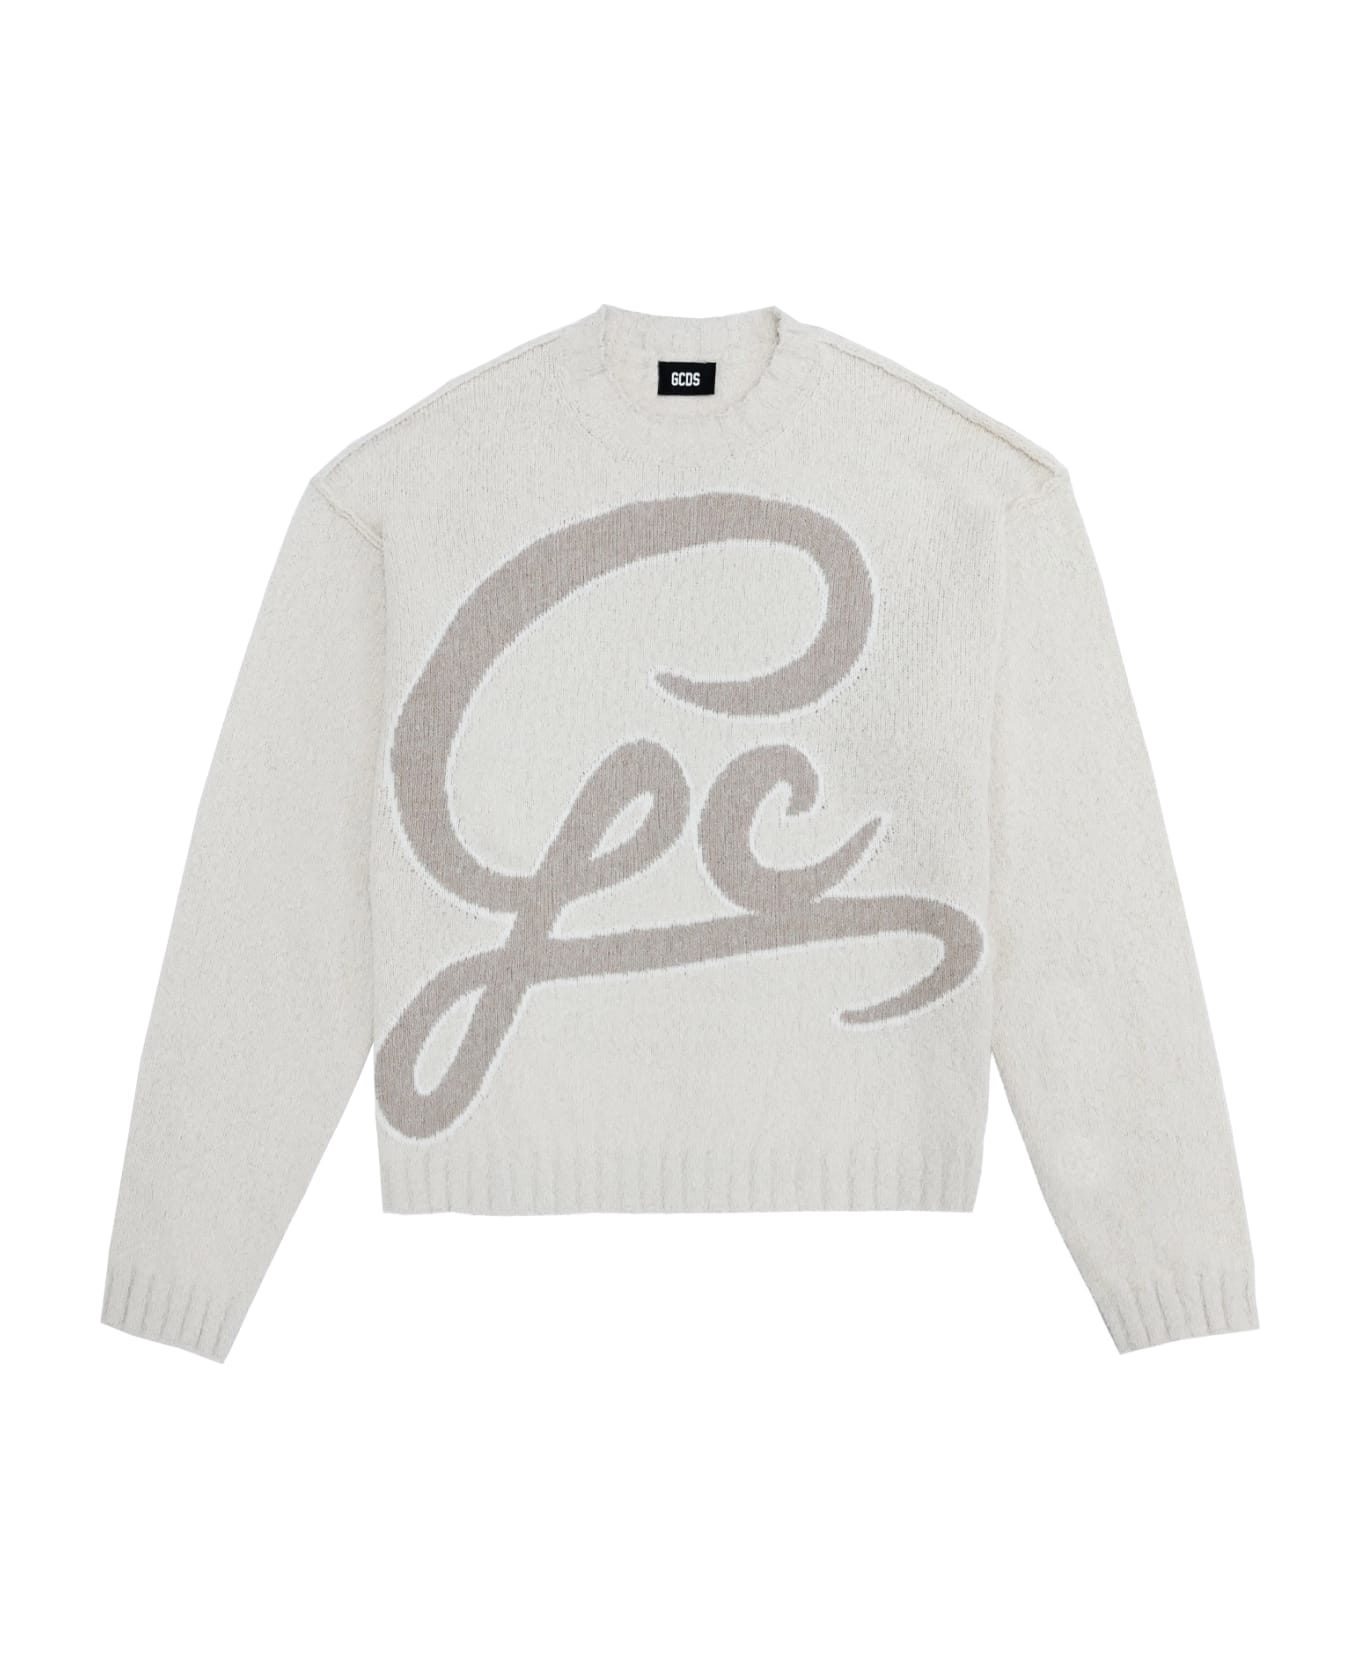 GCDS Sweater - White ニットウェア